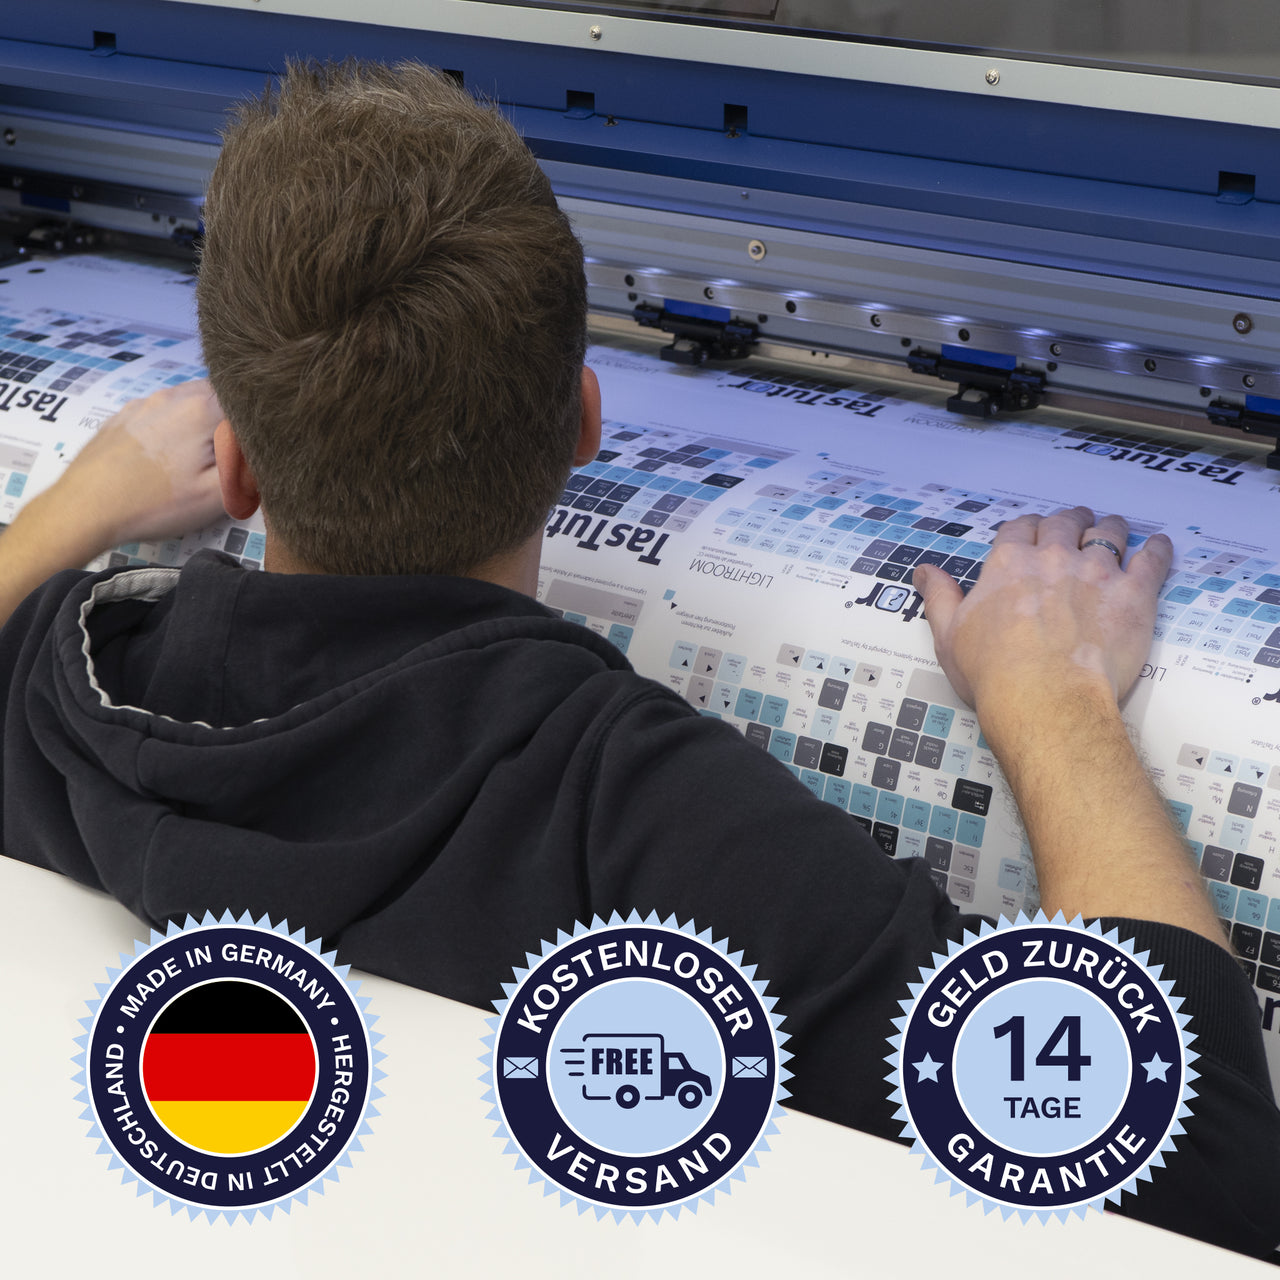 Photoshop Tastaturaufkleber werden in Deutschland hergestellt. Der Versand ist kostenlos und wir gewährleisten 14 Tage Geld zurück Garantie | TasTutor